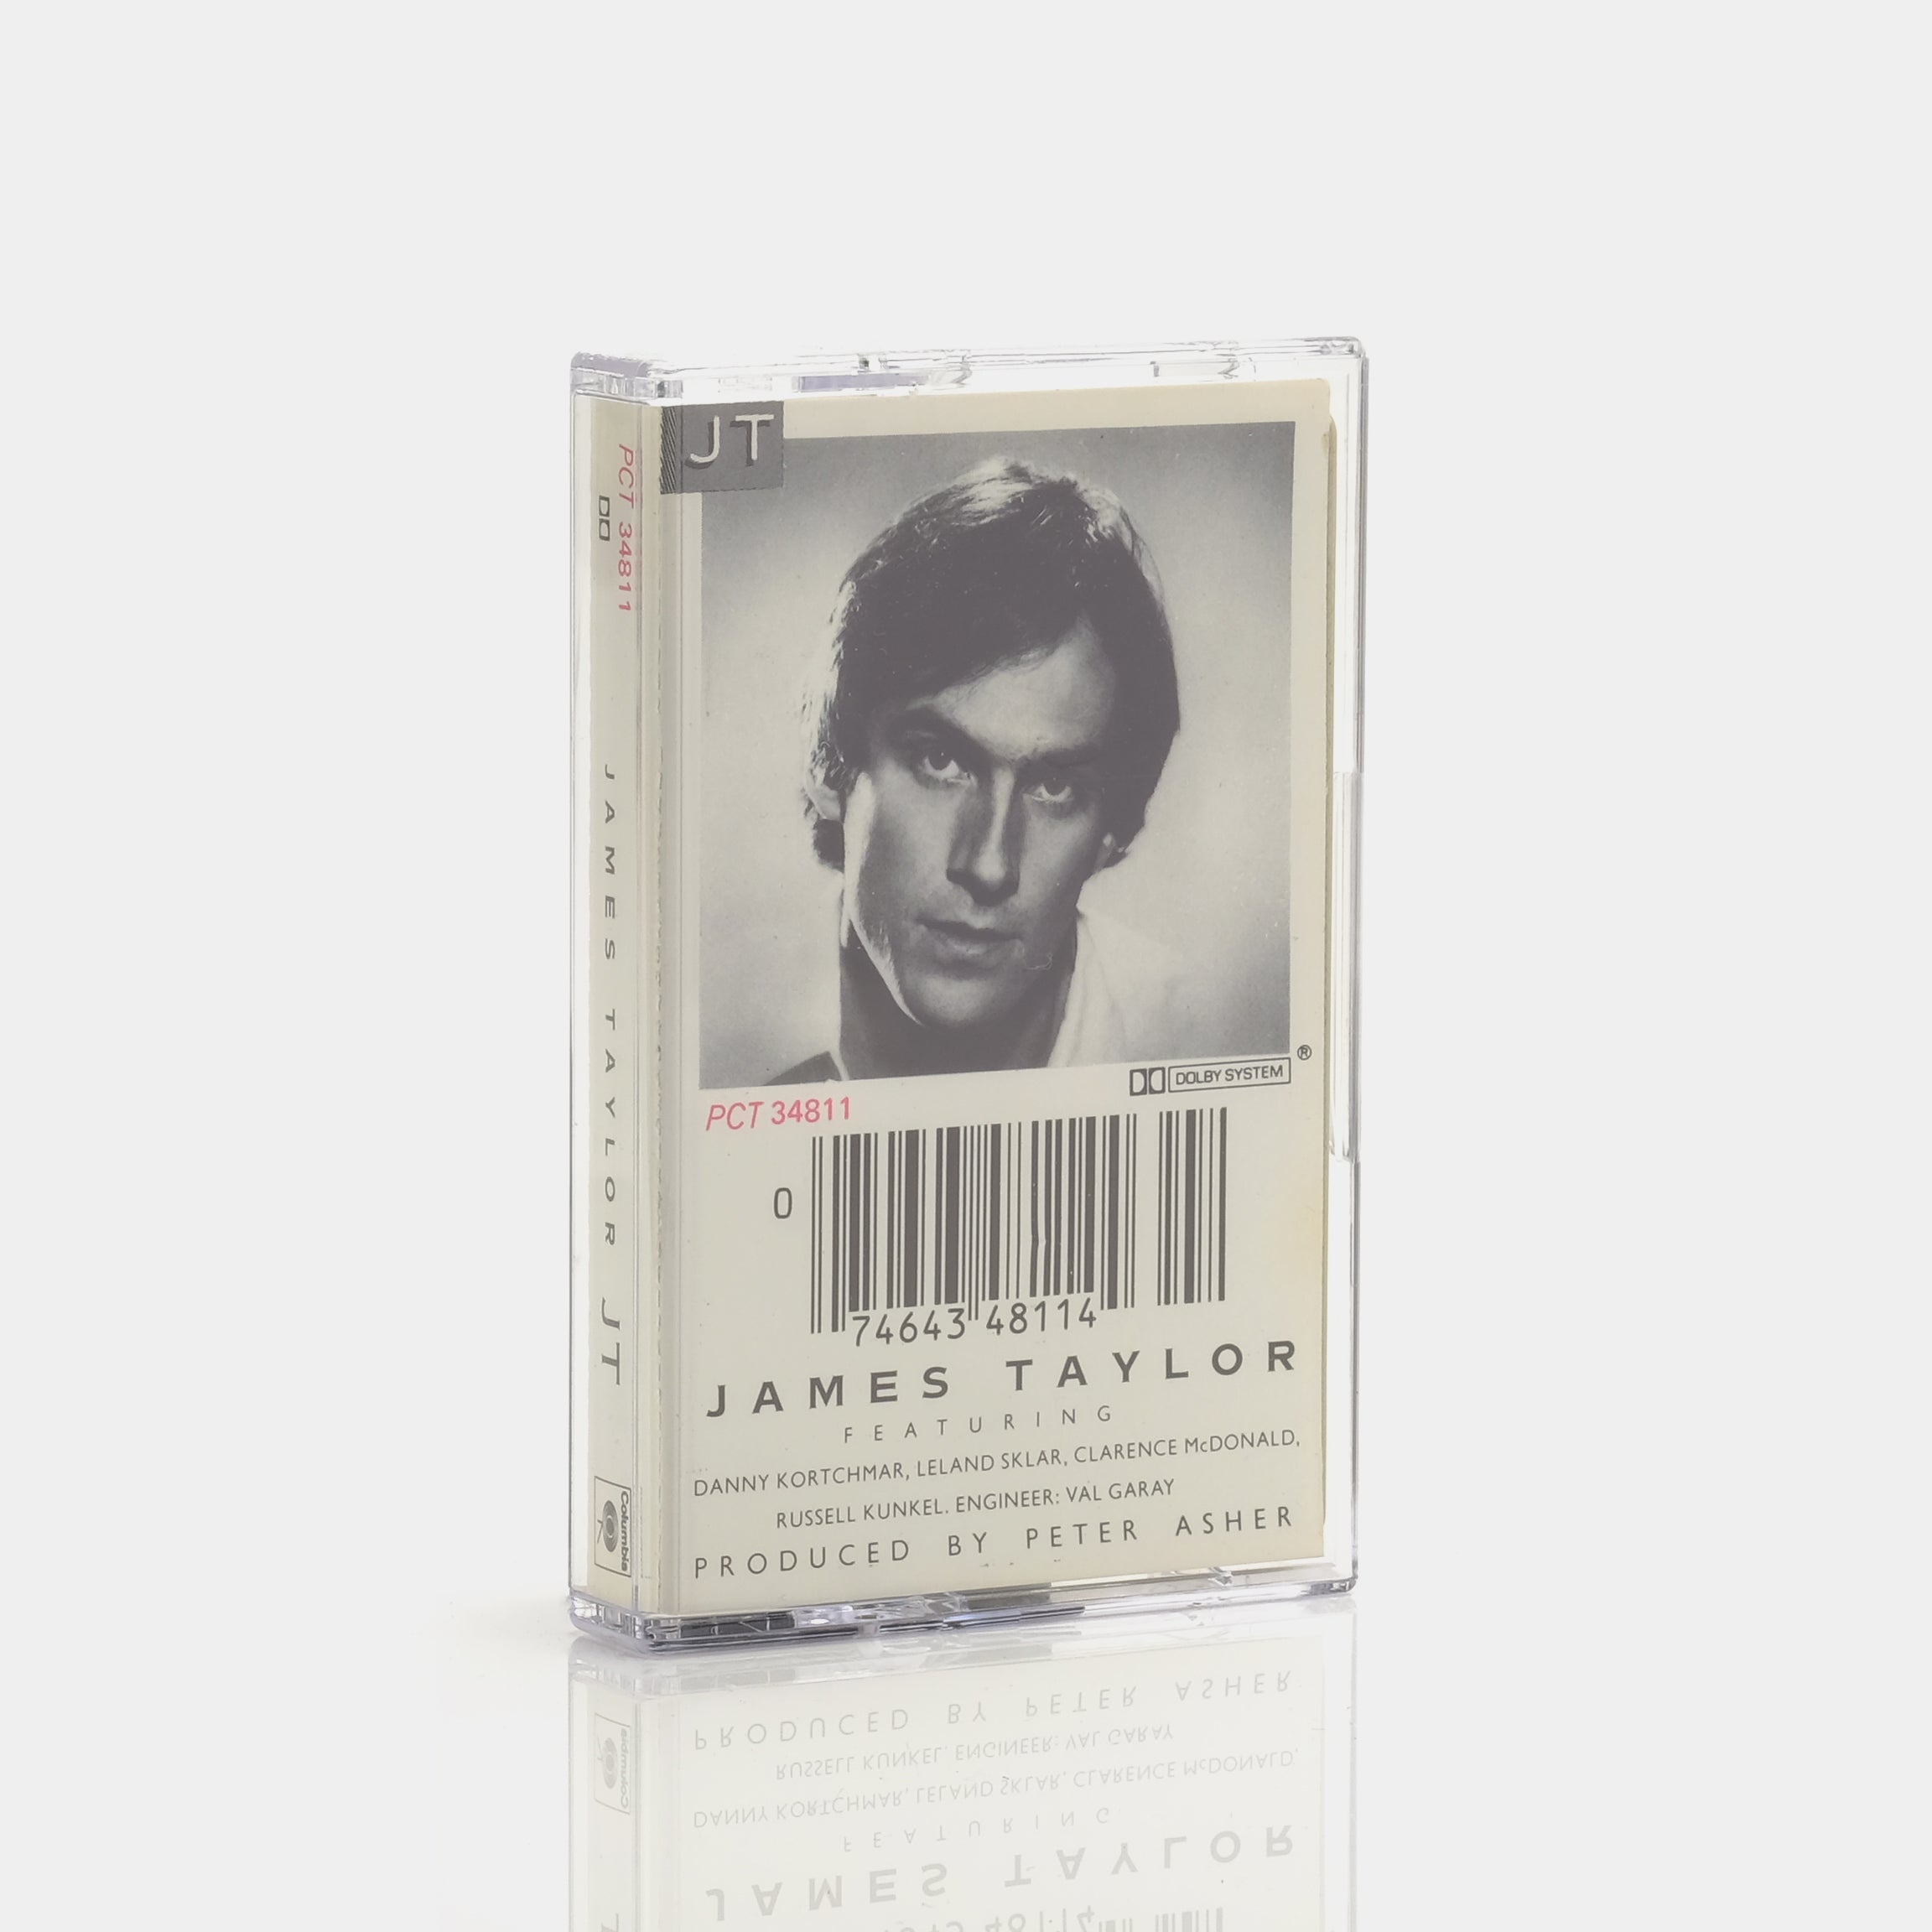 James Taylor - JT Cassette Tape